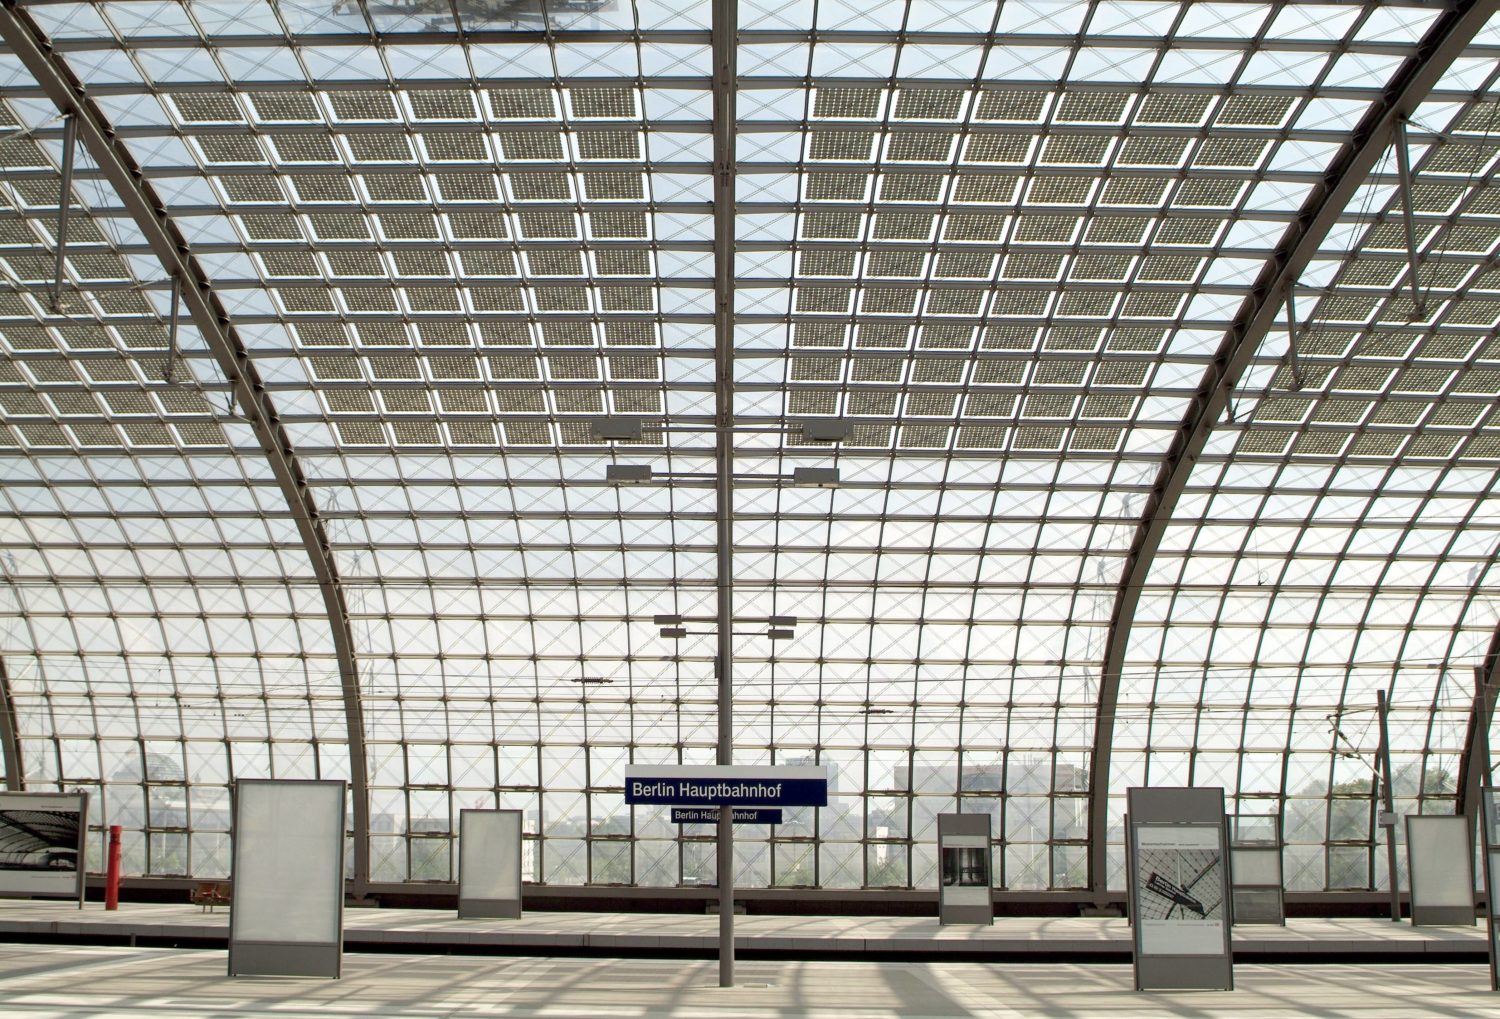 Das filigrane, gewölbte Glasdach des Berliner Hauptbahnhofs. Foto: Imago Images/imagebroker